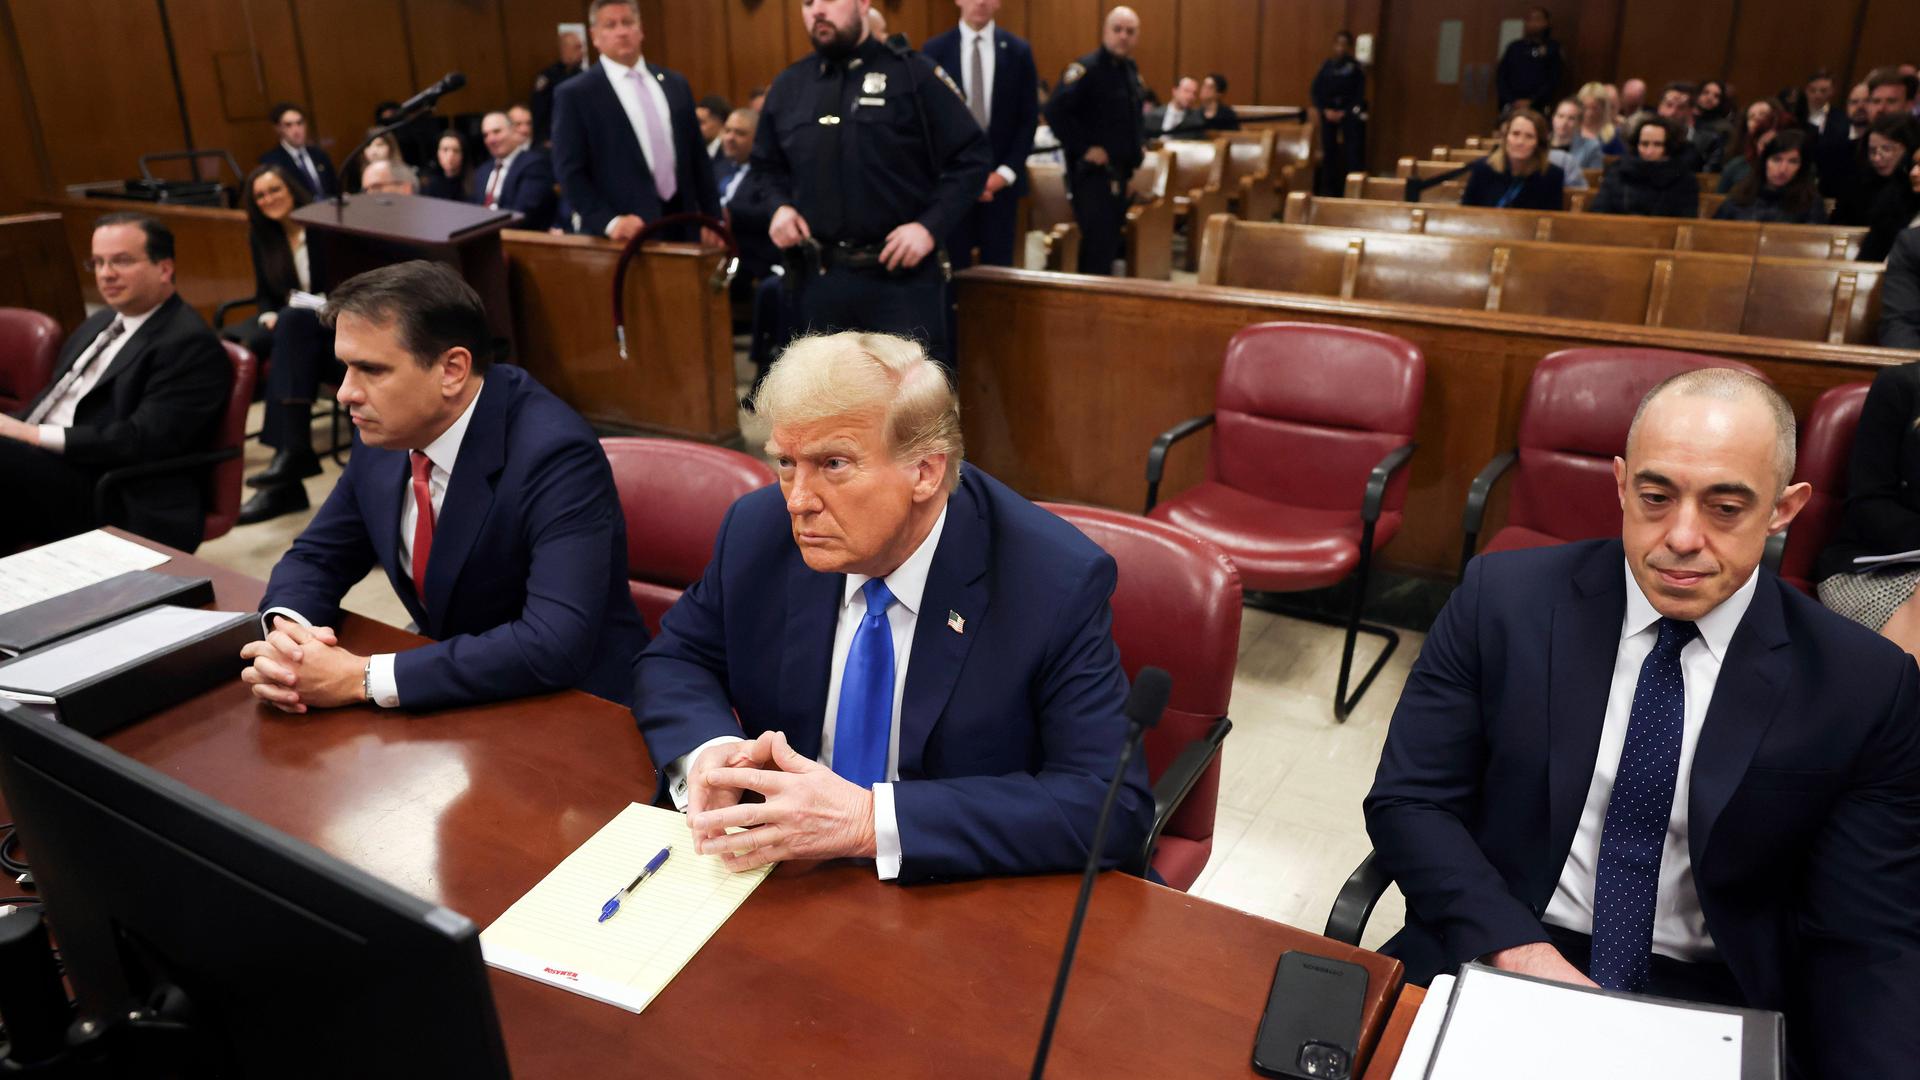 Der ehemalige Präsident und republikanische Präsidentschaftskandidat Donald Trump sitzt vor der Eröffnung der Verhandlung im Gerichtssaal.